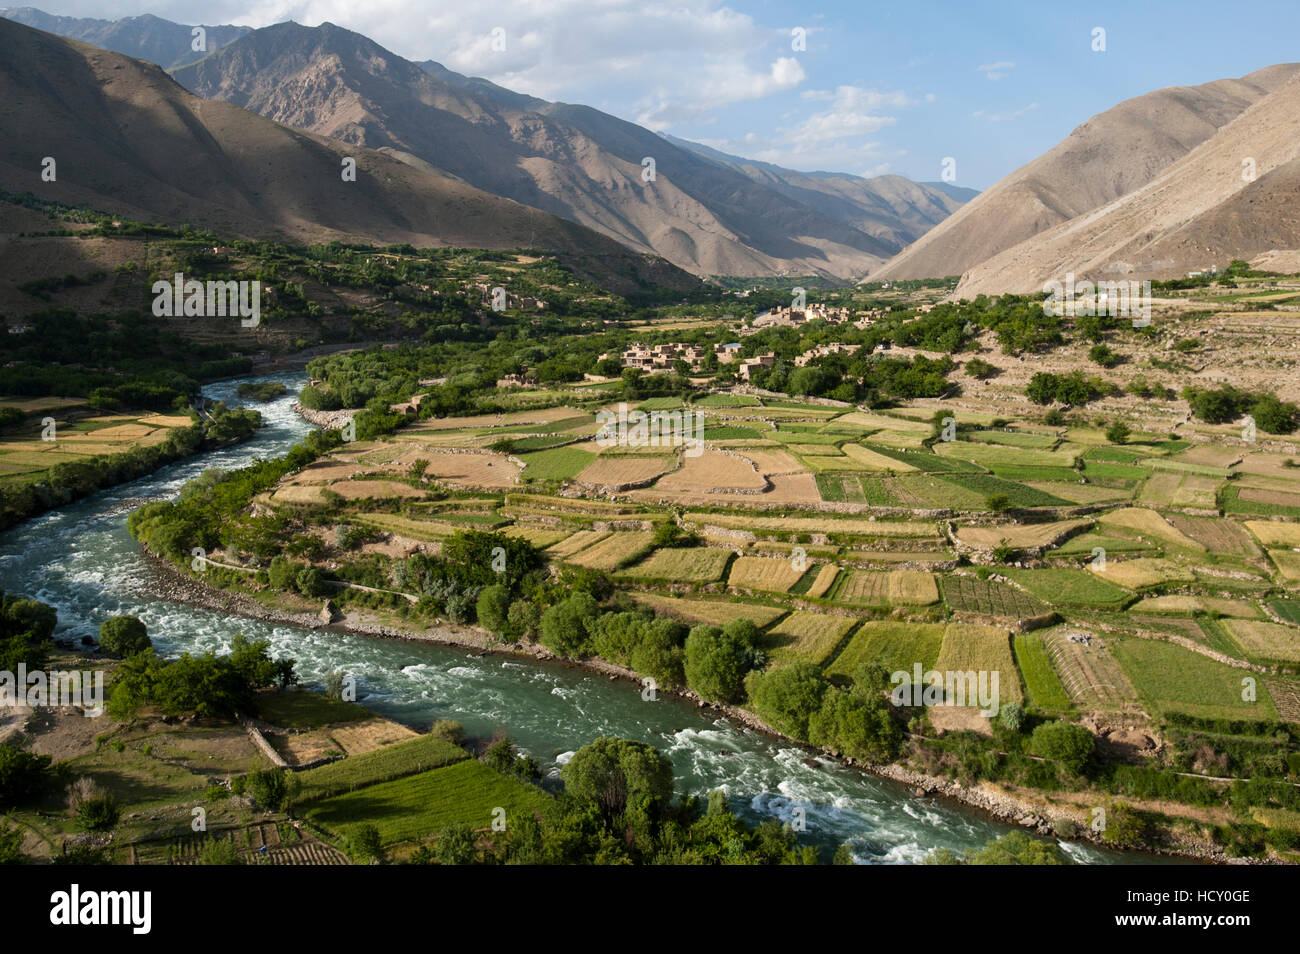 Il verde dei campi irrigati contrasta con le aride colline sopra, Afghanistan Foto Stock